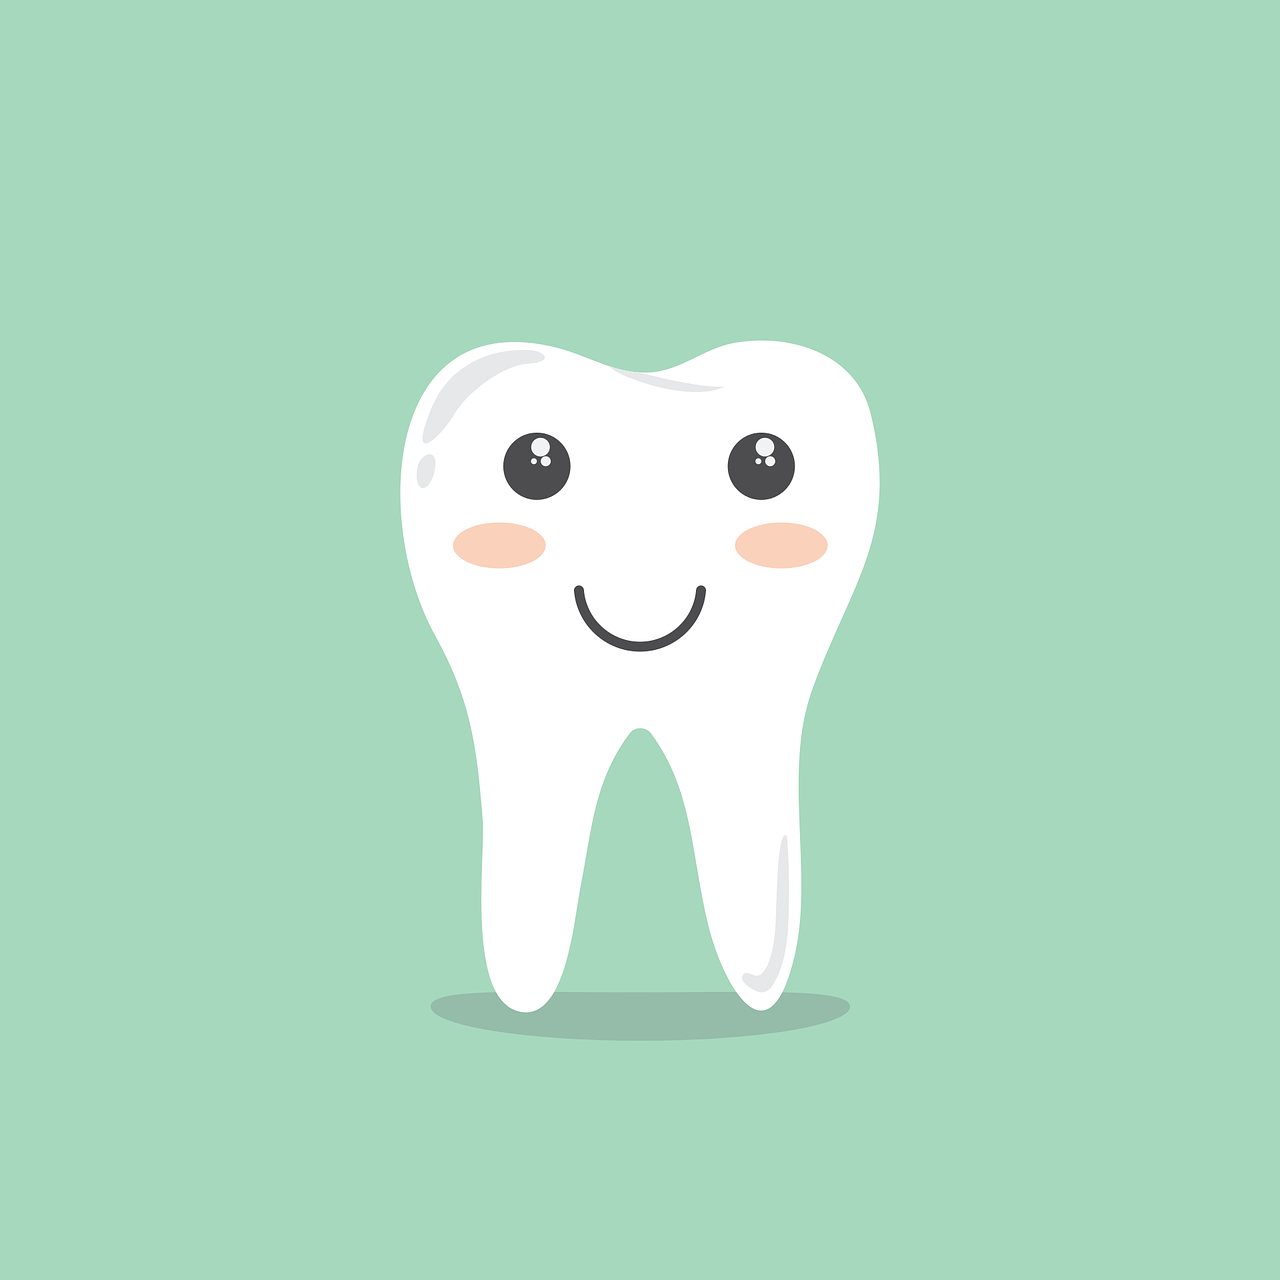 Che differenza c'è tra odontoiatra e odontotecnico?